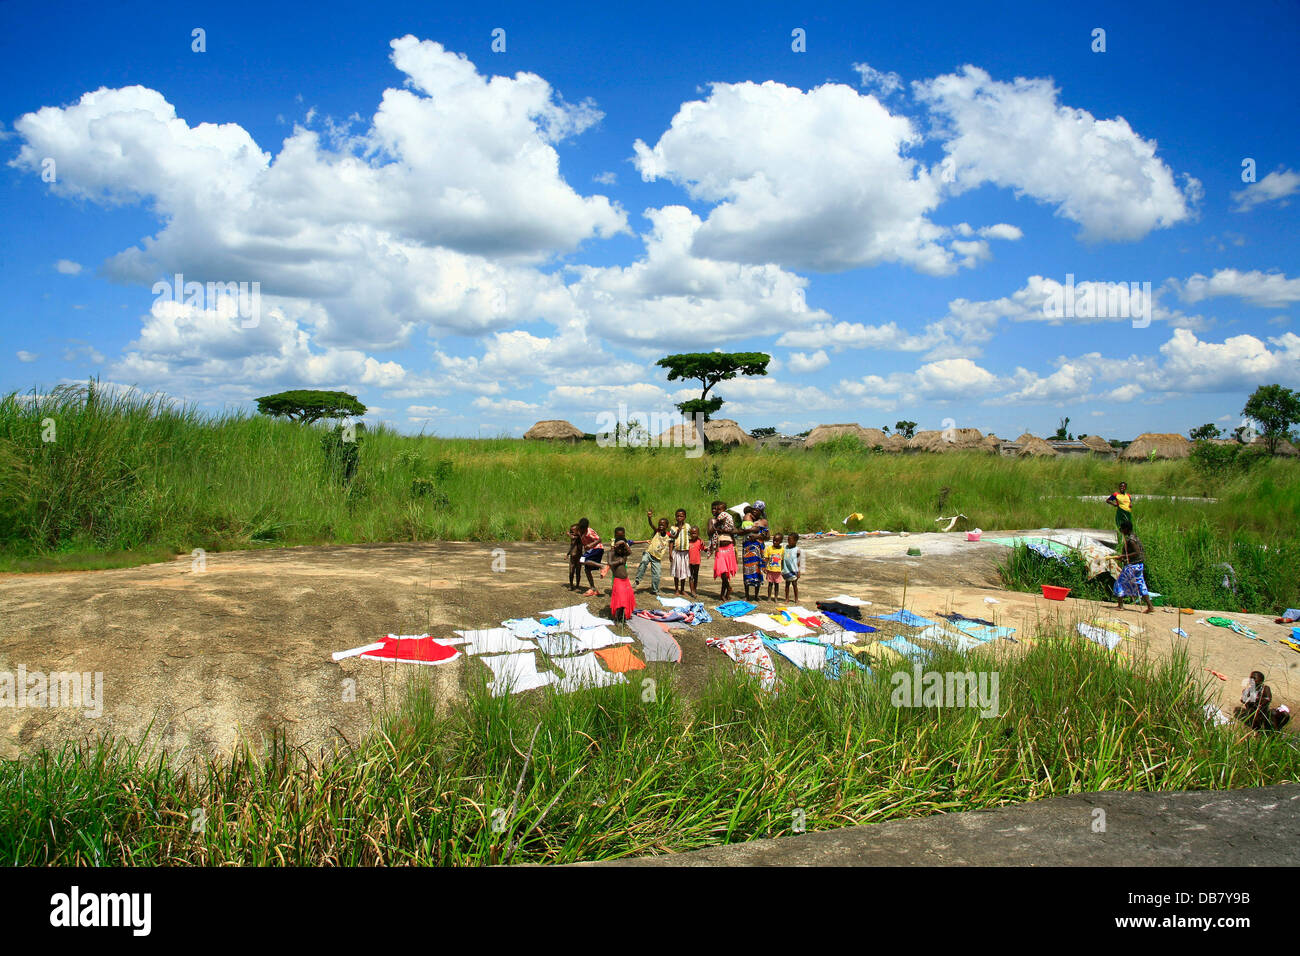 Afrikanische Länder - Angola Kinder afrikanischen Dorf stehen in der Nähe von waschen, trocknen in der Sonne Waschtag in Afrika, die gewaschene Wäsche Stockfoto